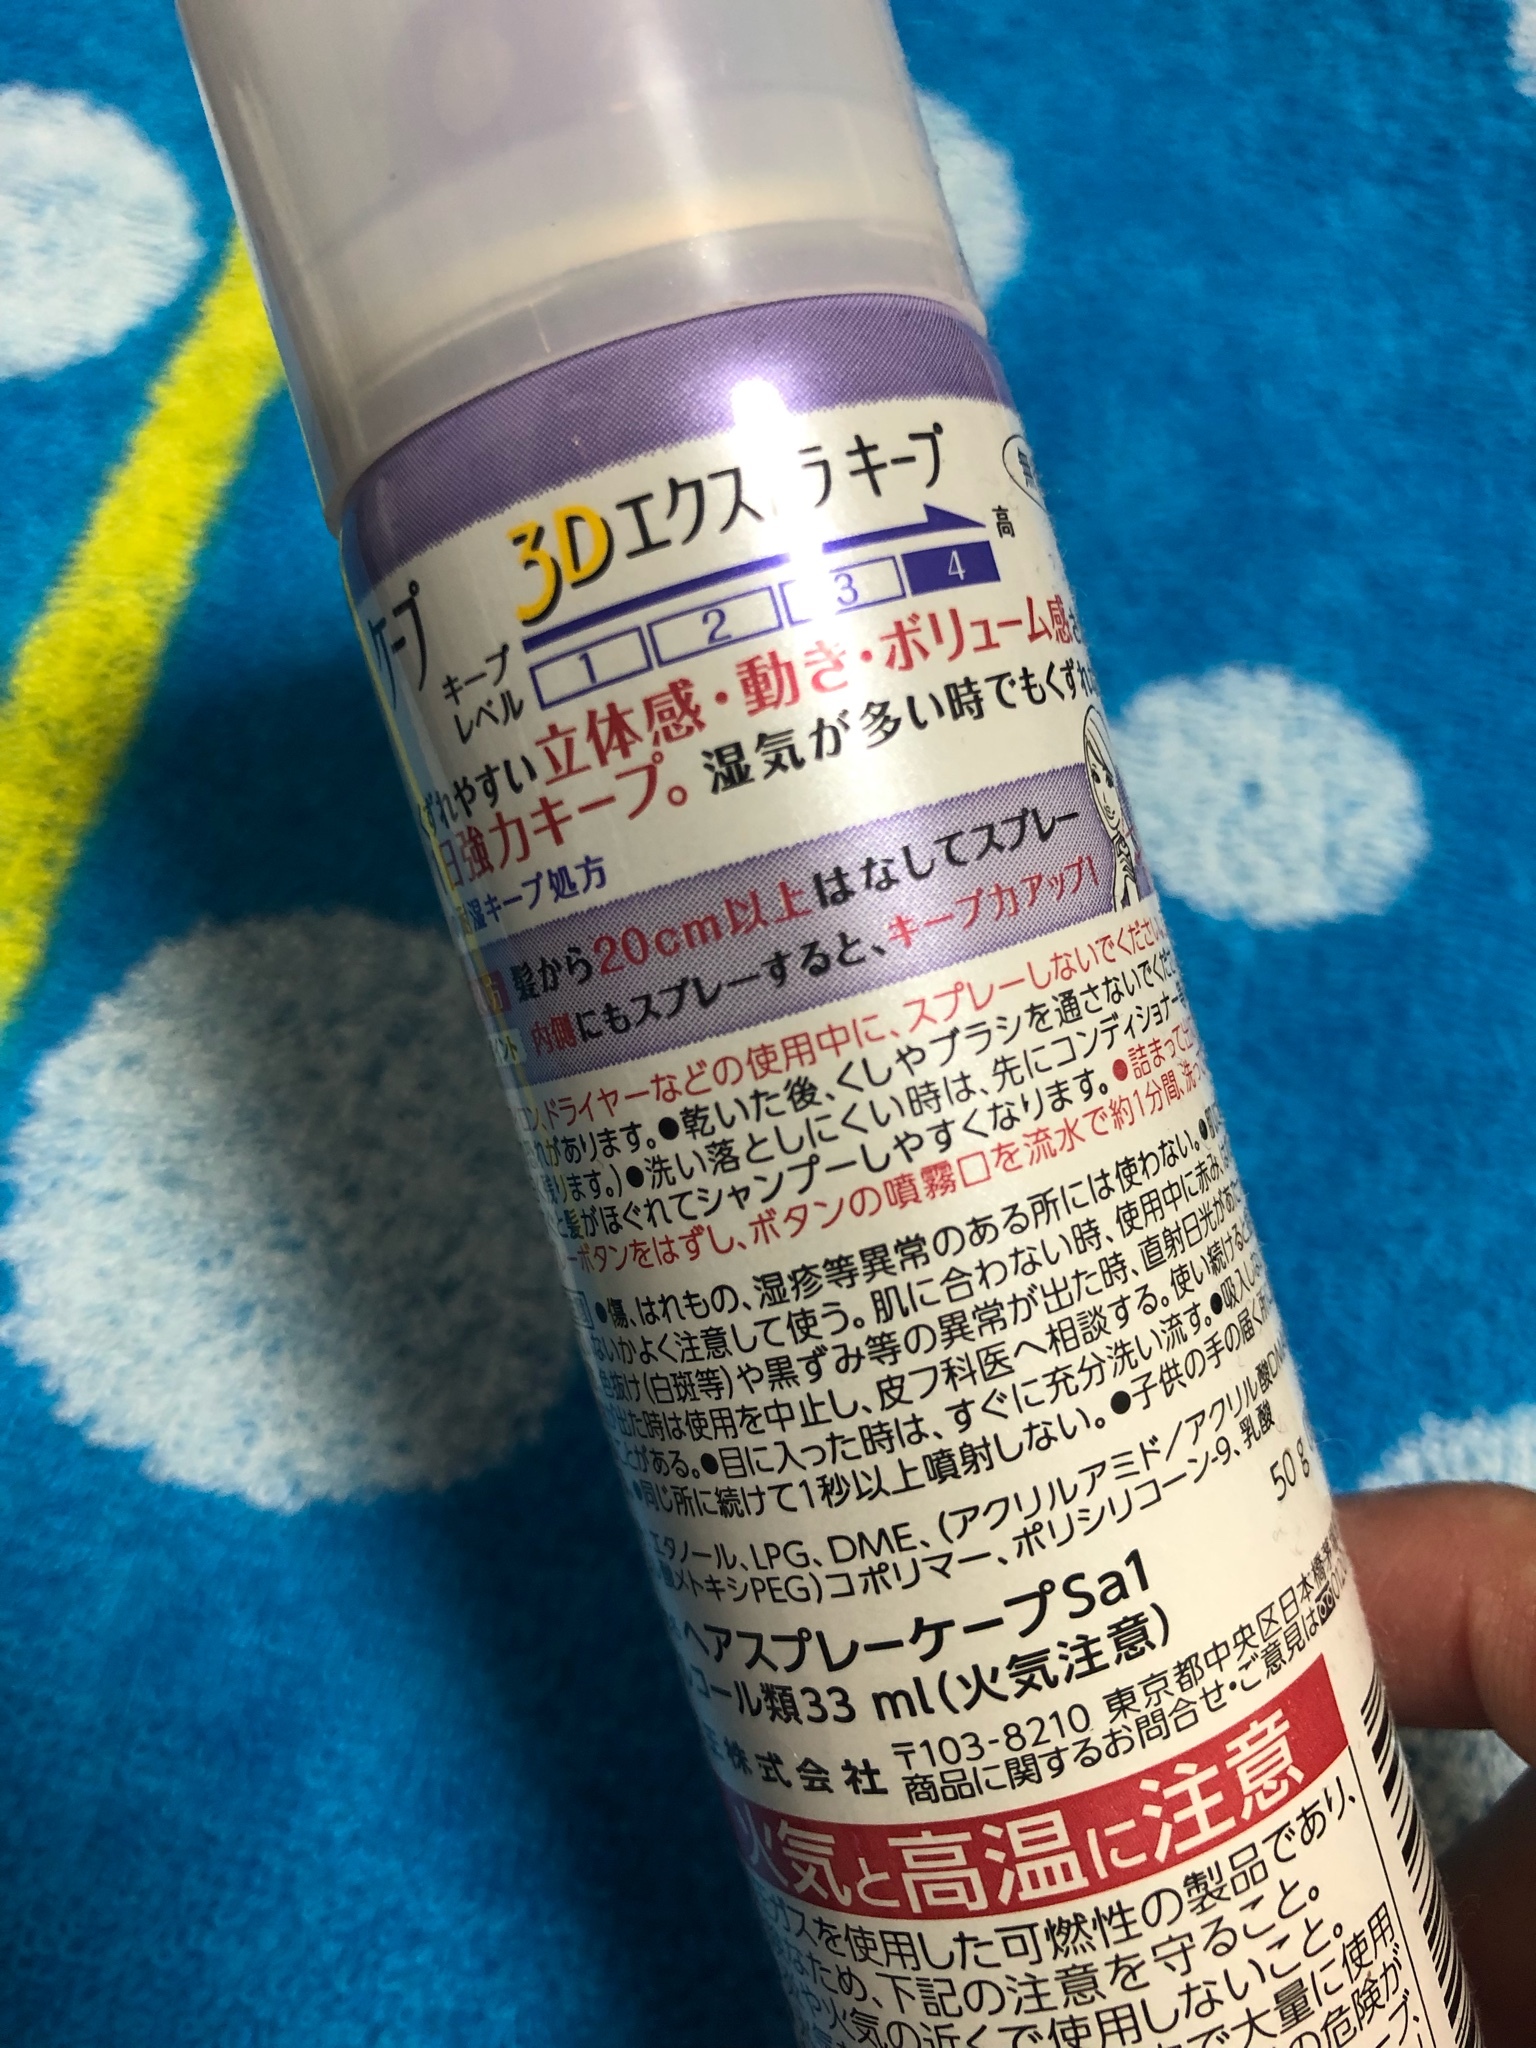 ケープ ケープ 3dエクストラキープ 無香料の口コミ写真 By ゆうみん さん 2枚目 美容 化粧品情報はアットコスメ